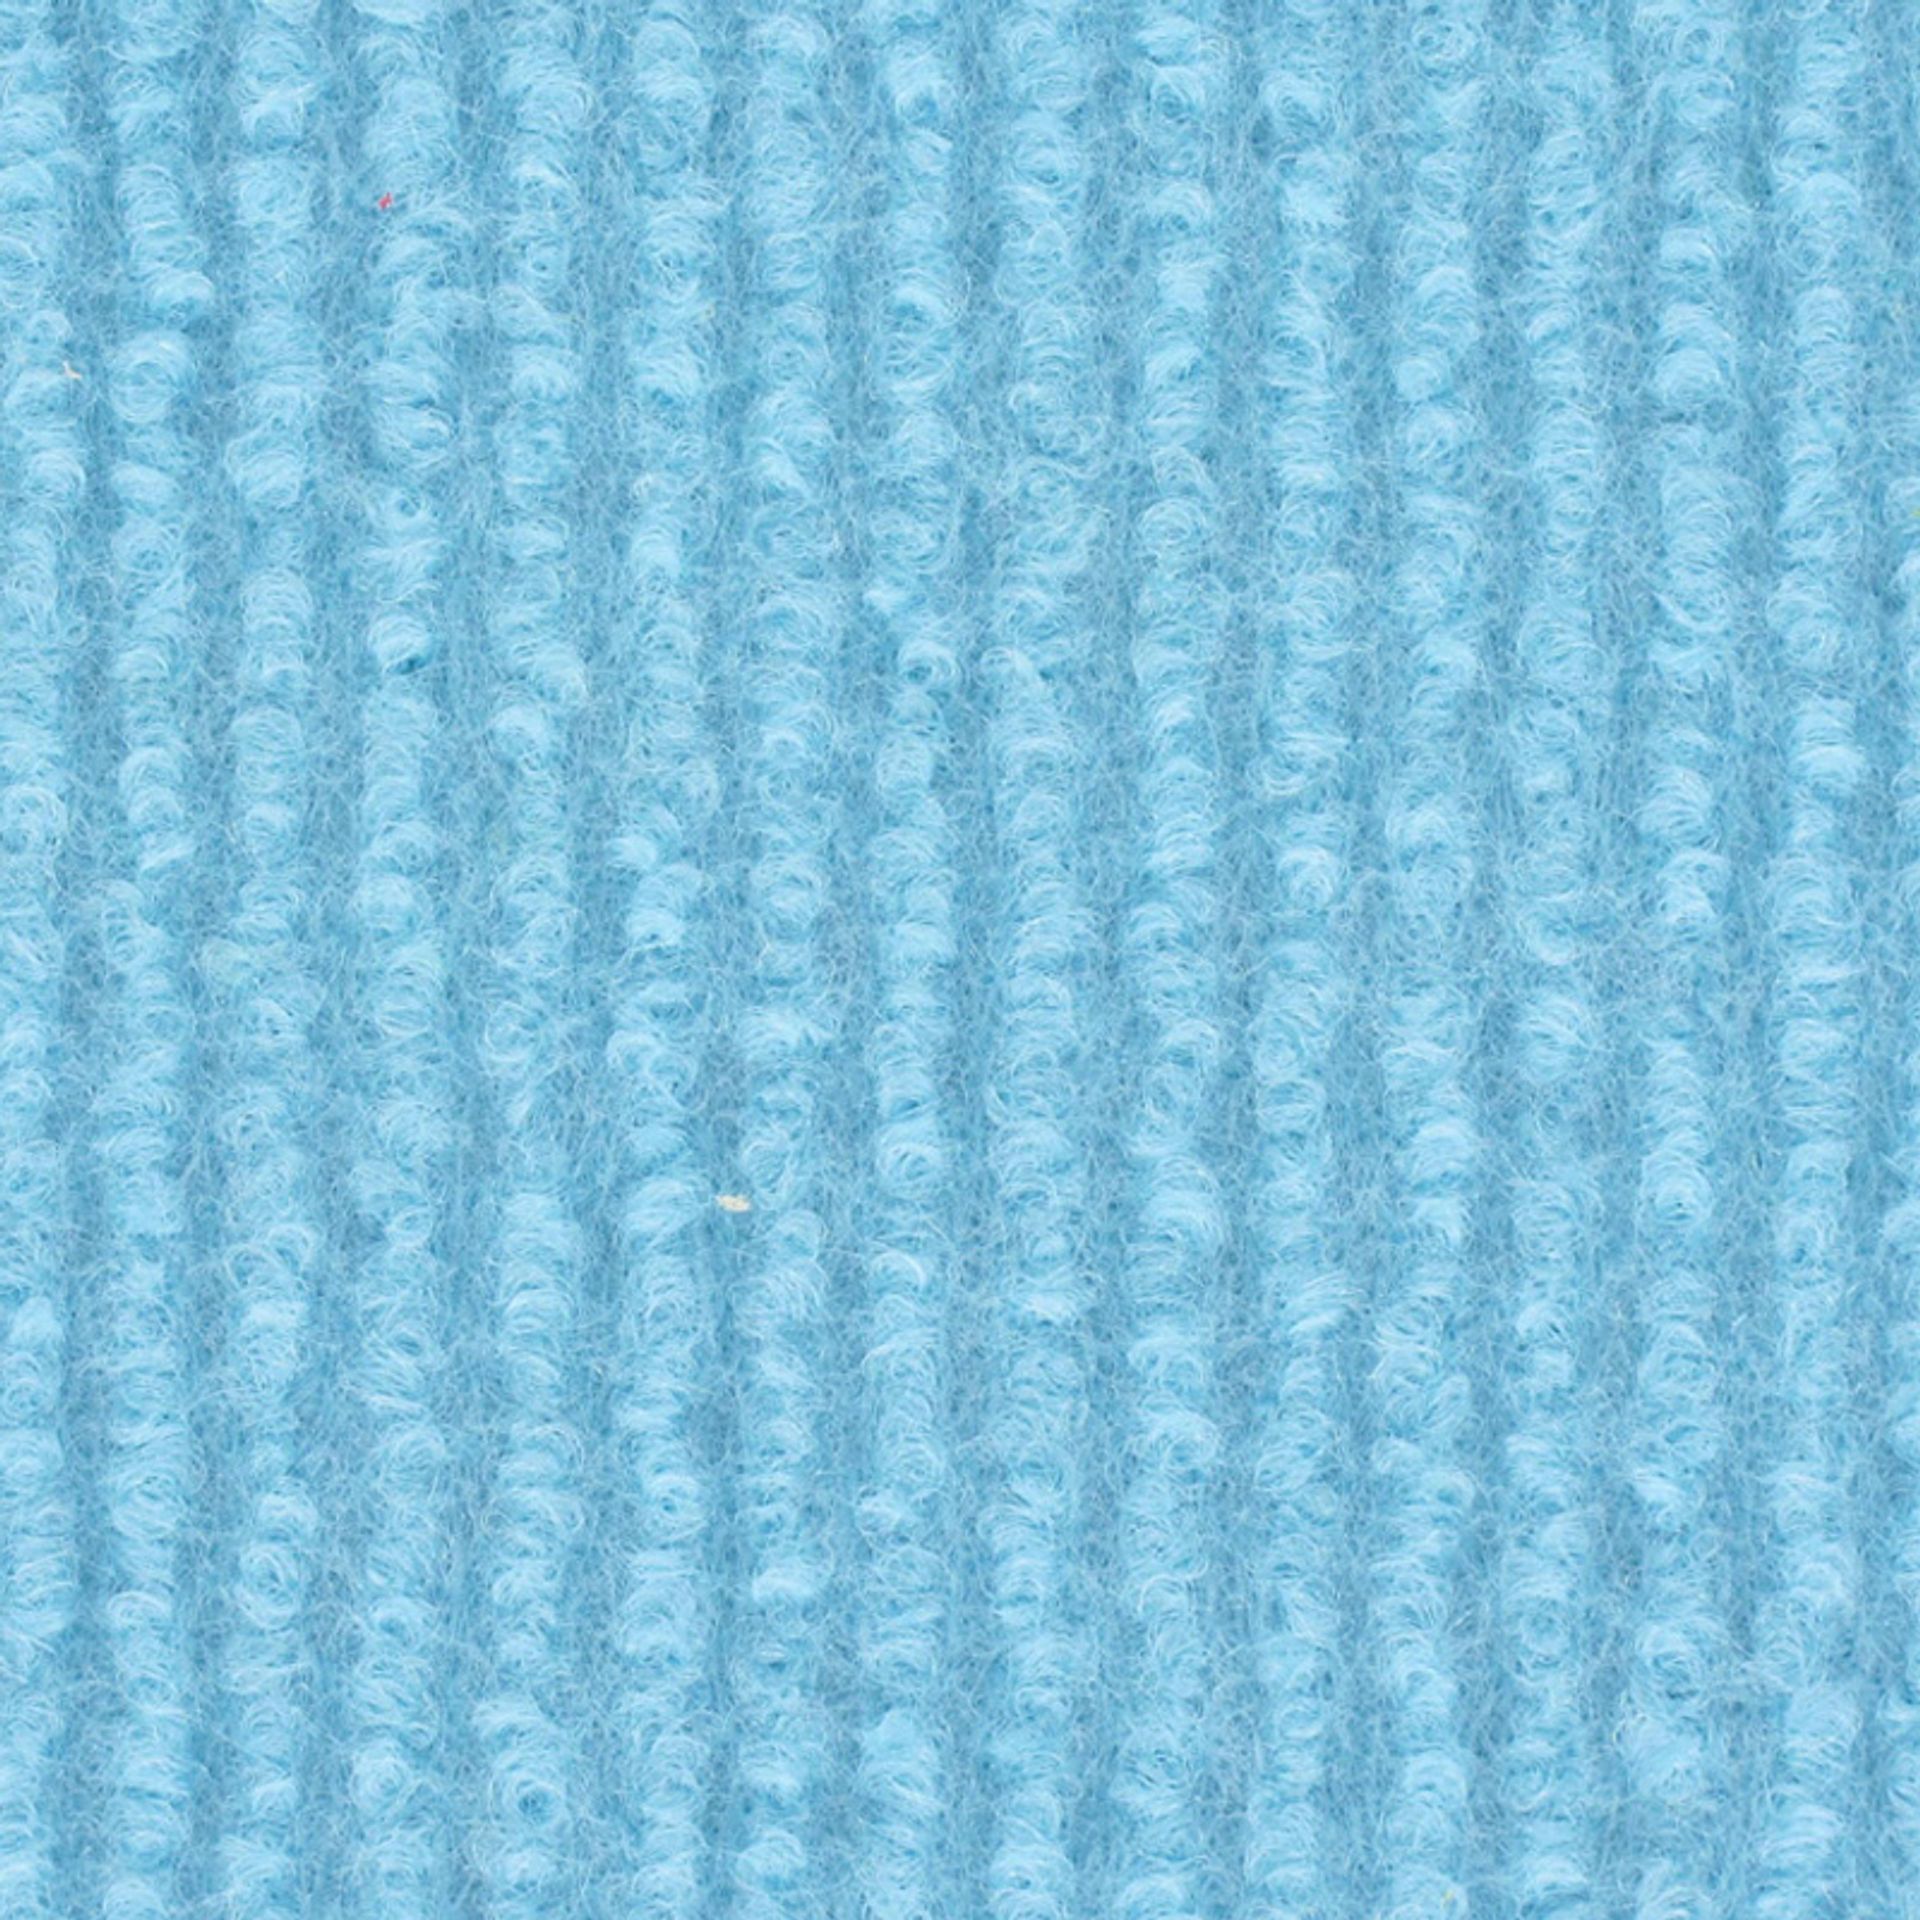 Messeboden Rips-Nadelvlies EXPOLINE Purist Blue 2134 100qm ohne Schutzfolie - Rollenbreite 200 cm